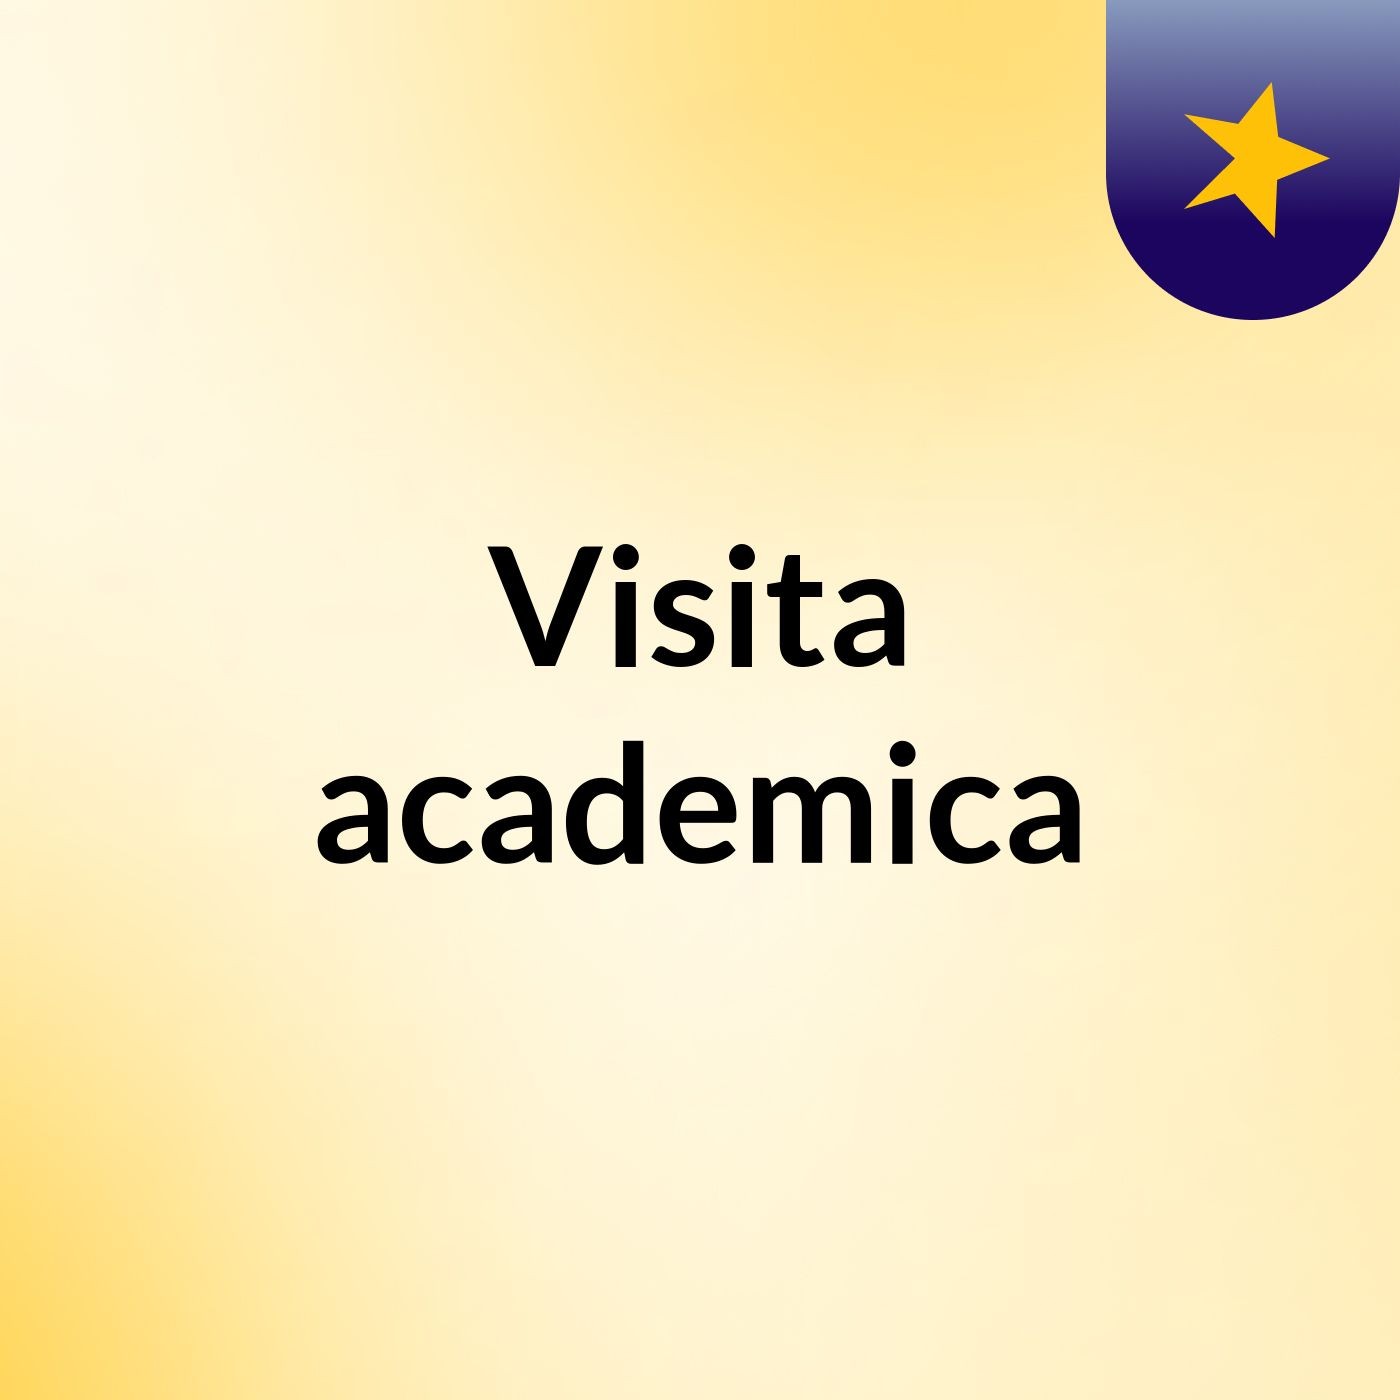 Visita academica